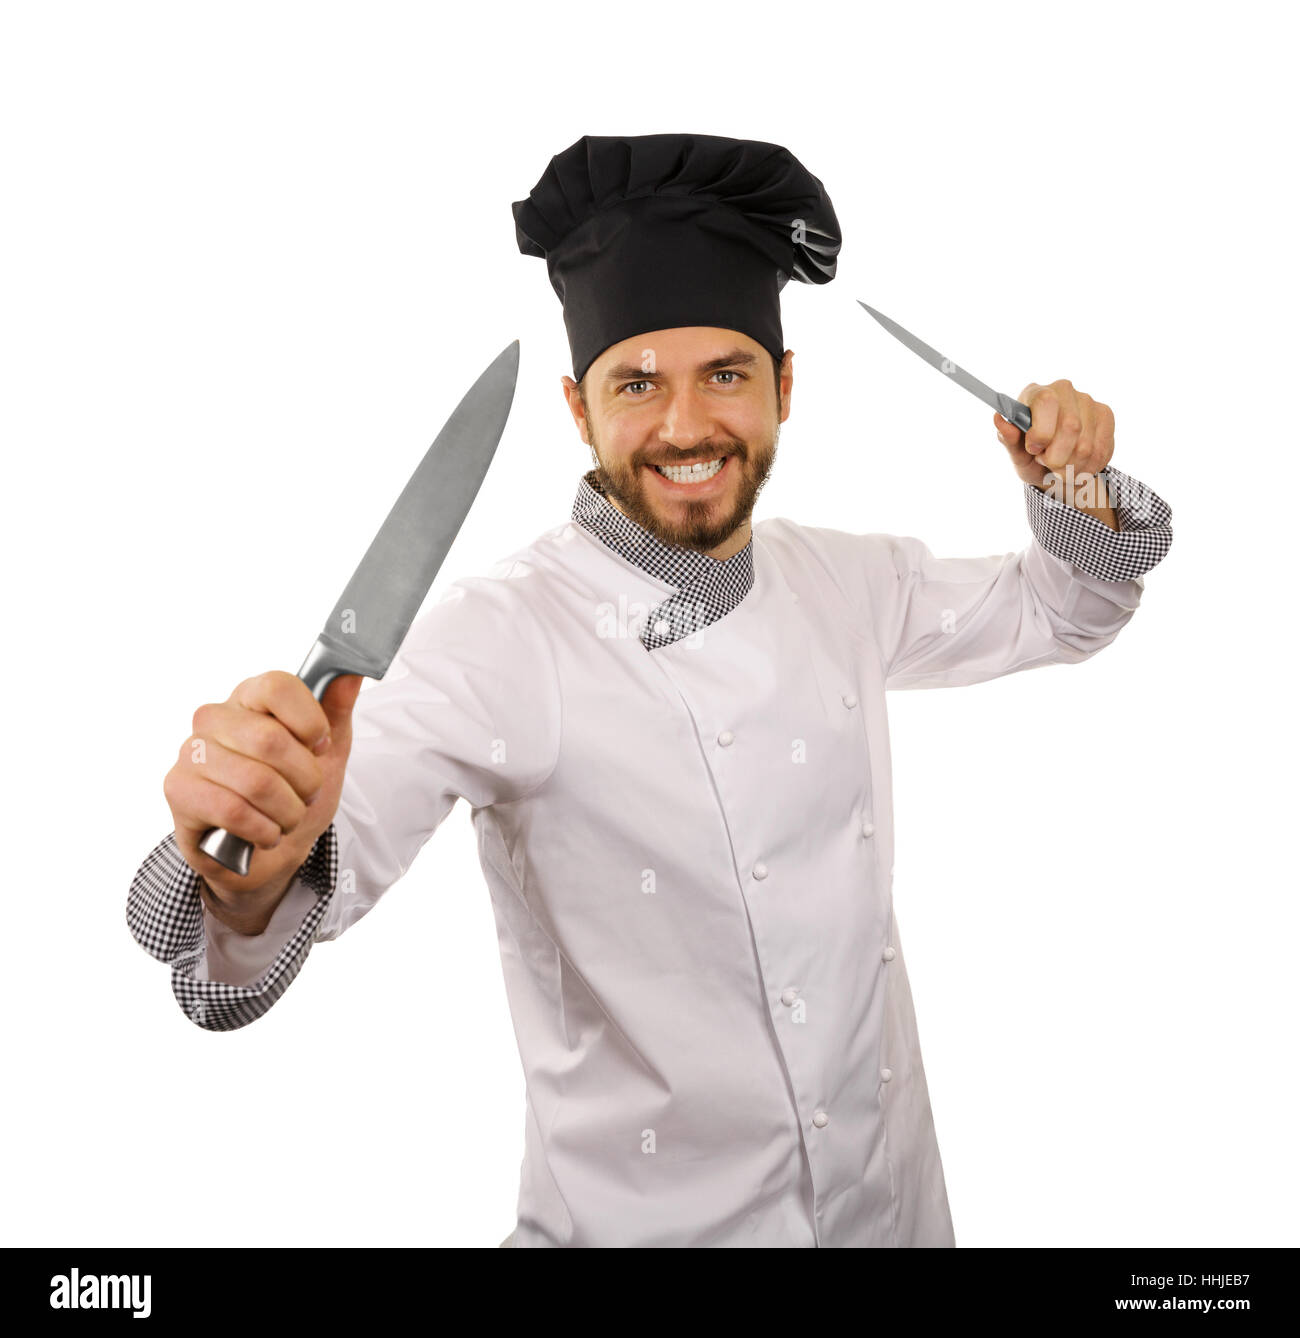 Chef di cucina con coltelli in mani isolati su sfondo bianco Foto stock -  Alamy